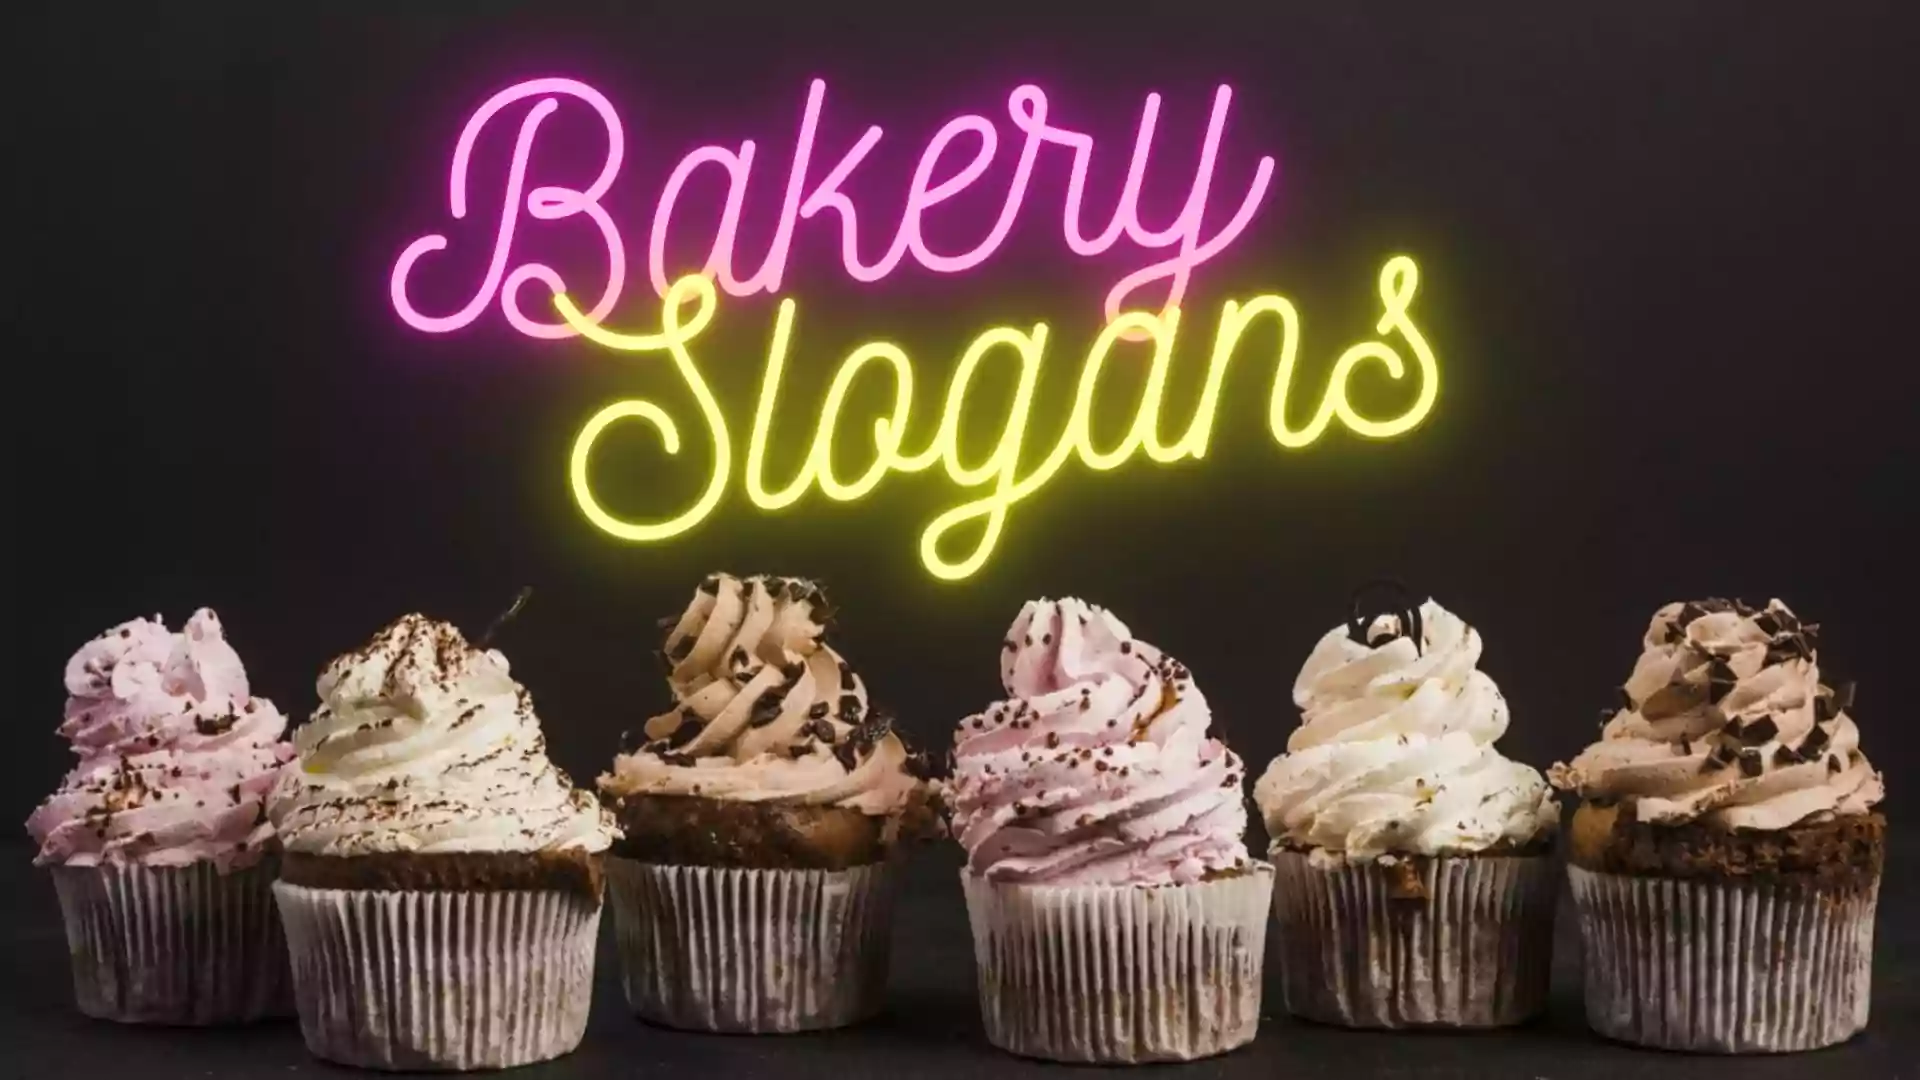 351+ Best Bakery Names & Slogans